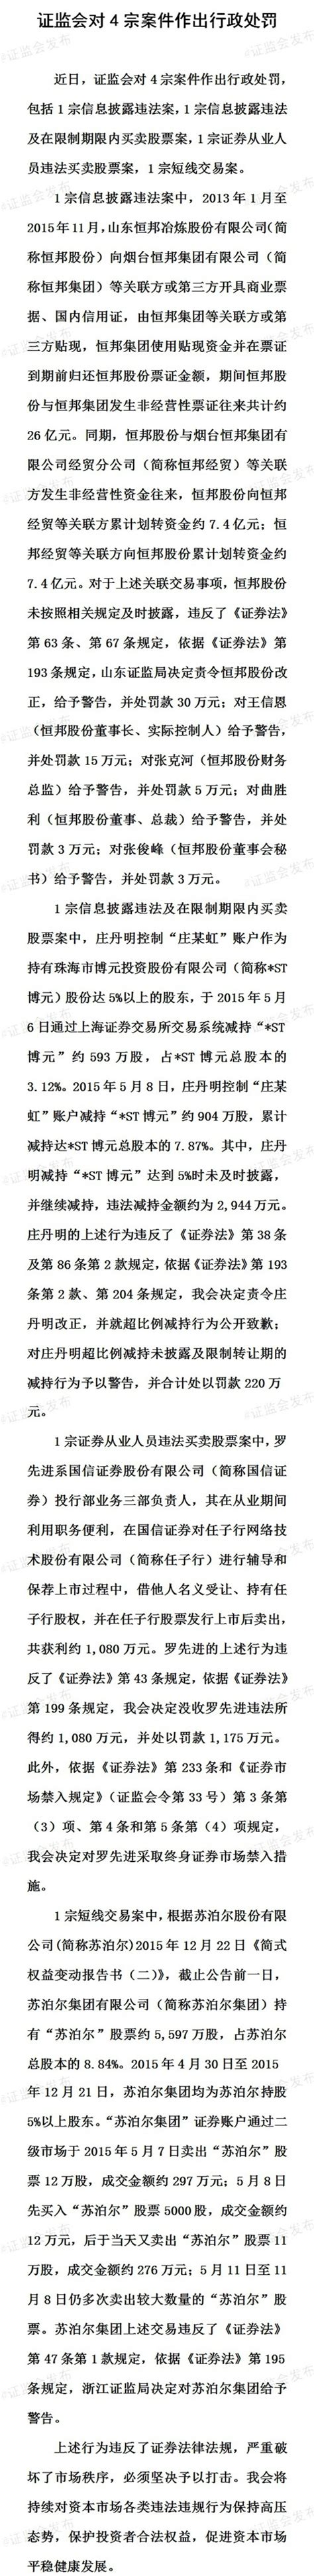 证监会对四宗案件作出行政处罚(图)-搜狐财经